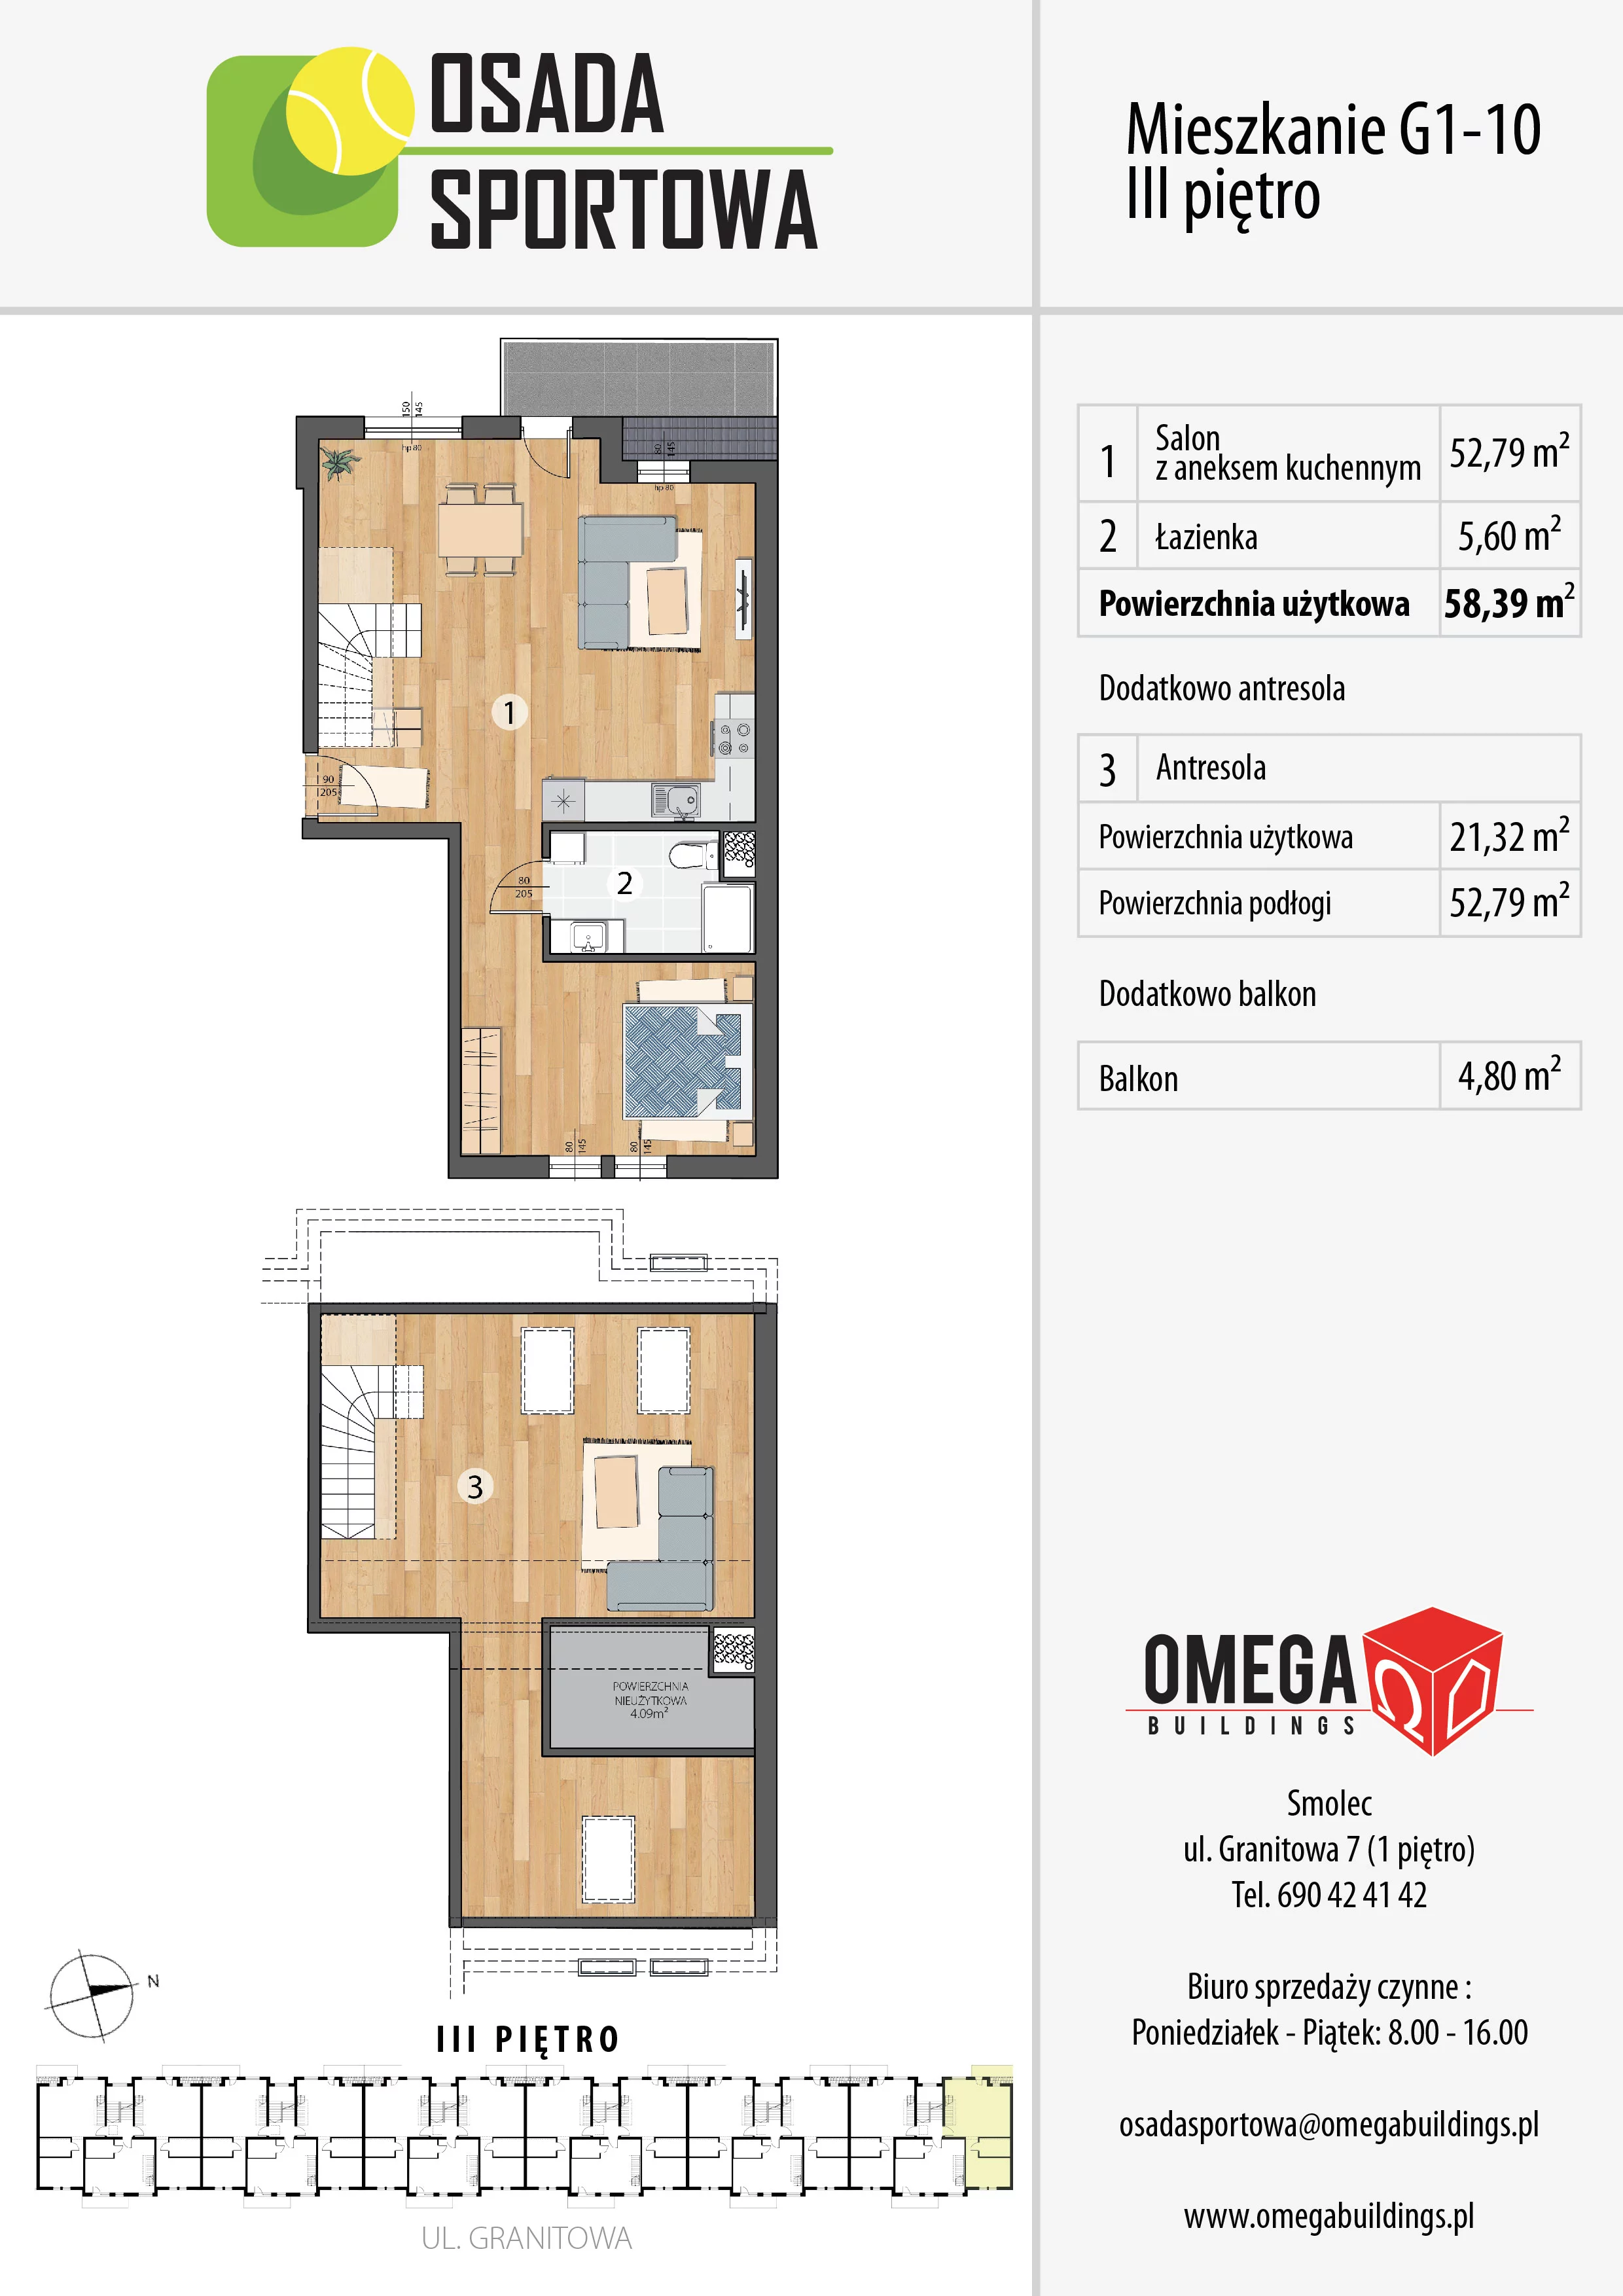 Mieszkanie 79,71 m², piętro 3, oferta nr G1-10, Osada Sportowa Budynek G, Smolec, ul. Granitowa 52-62